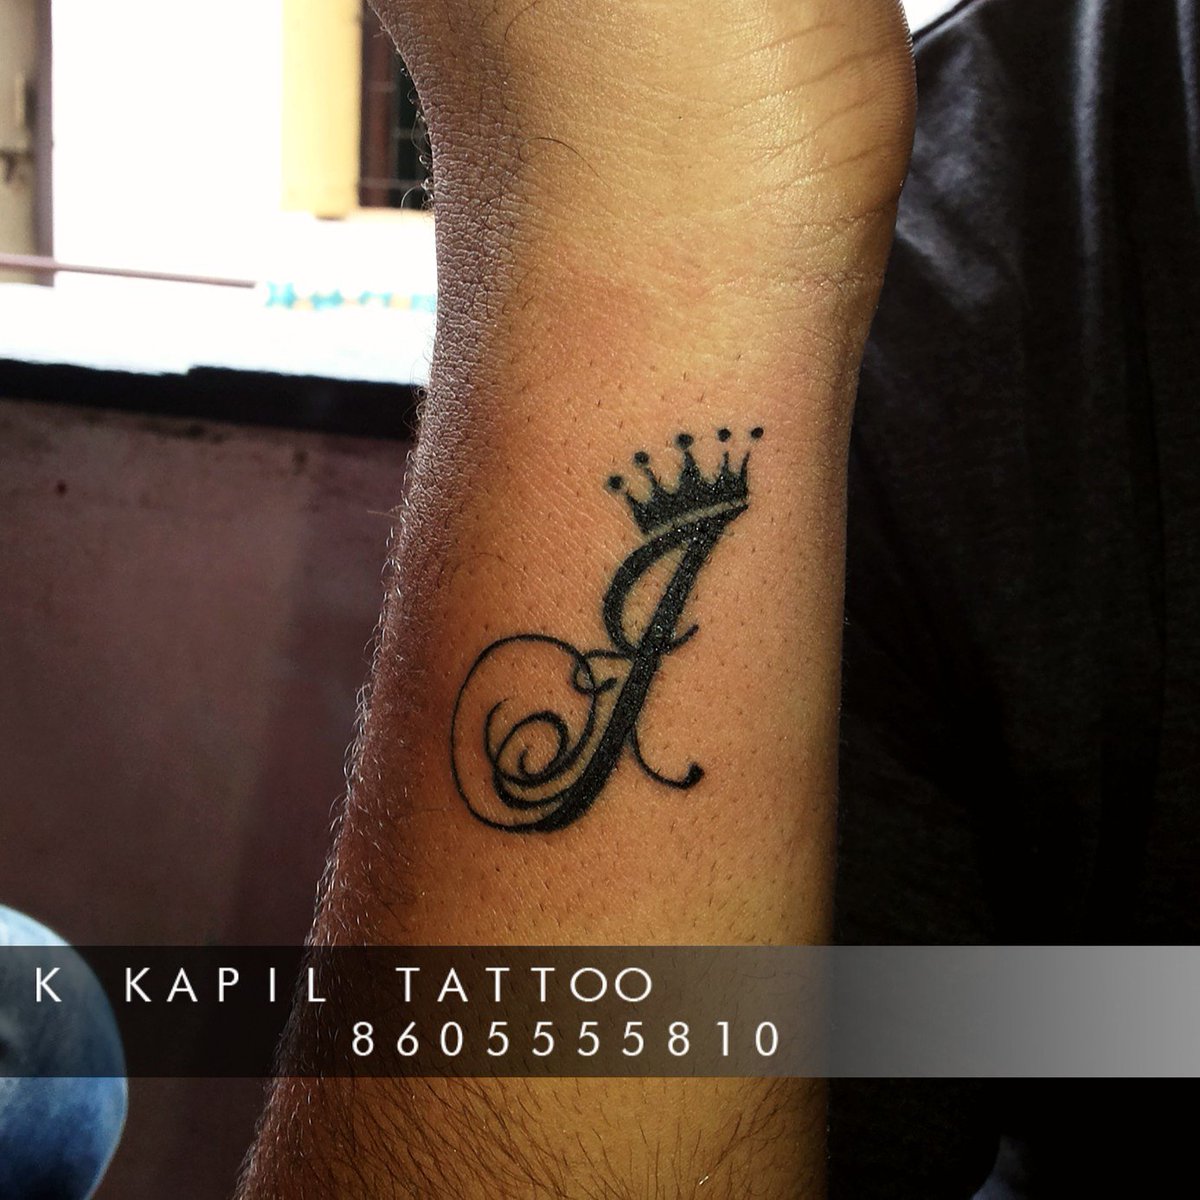 pair crown tattoo 08122019 036 tattoo crown tattoovaluenet   tattoovaluenet